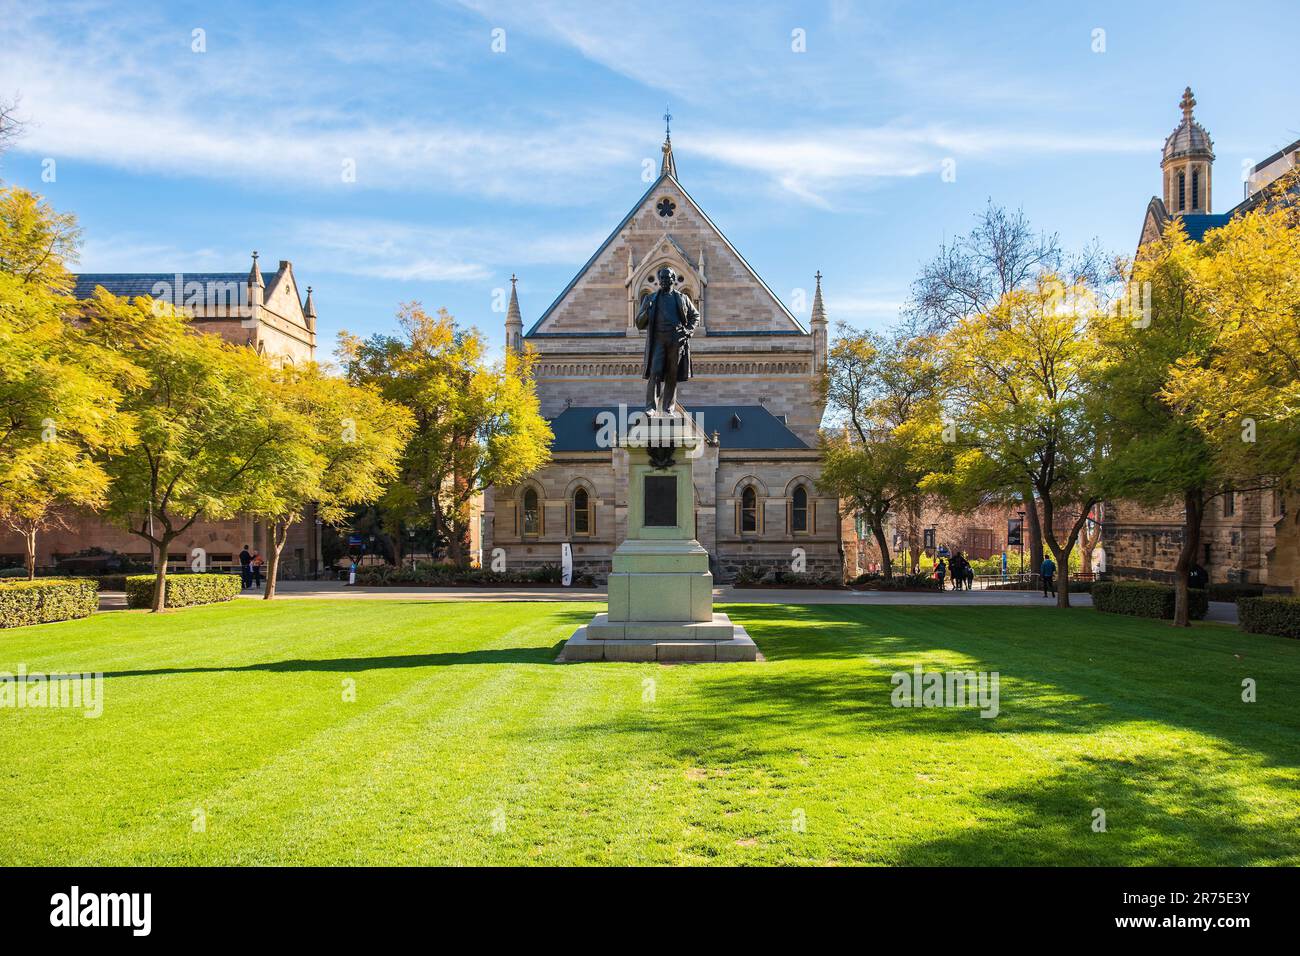 Adelaide, Südaustralien - 2. September 2019: Campus-Fassade der Universität Adelaide mit einem Denkmal der klassischen Epoche im gotischen Stil an einem Tag Stockfoto